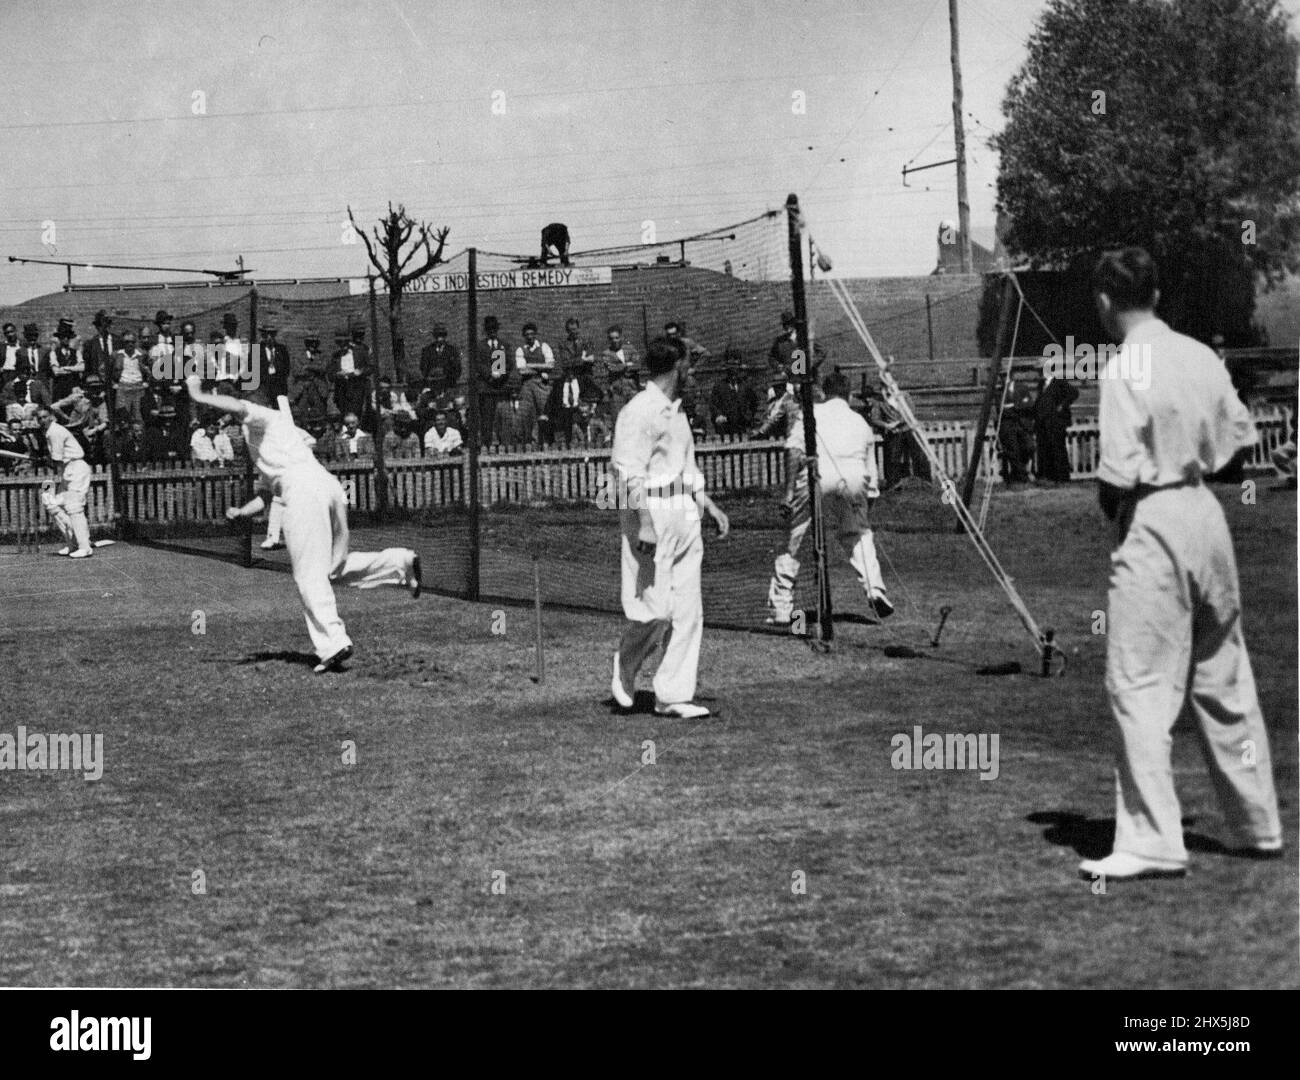 Sport Cricket Nets & Net Practice. October 8, 1946. Stock Photo